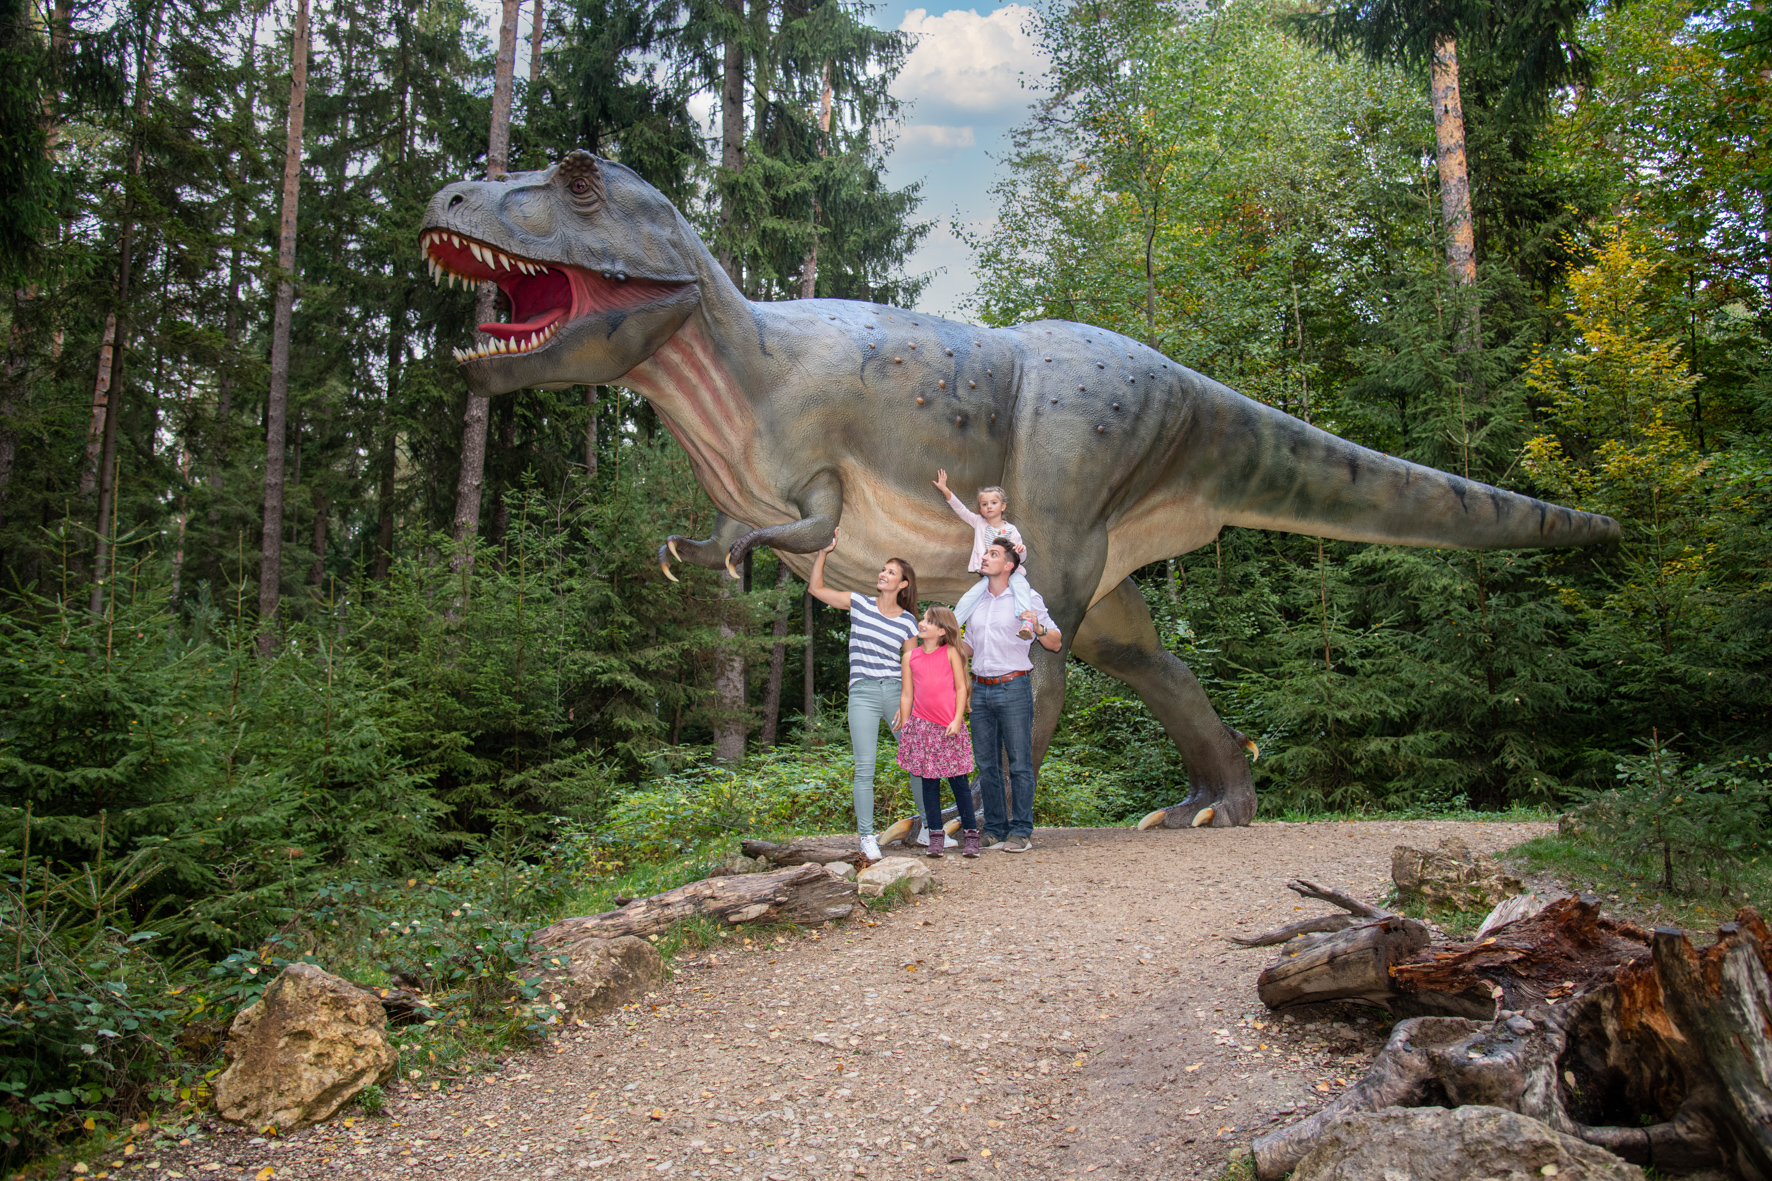 Familienticket für das Dinosaurier Museum Altmühltal inkl. Verpflegung